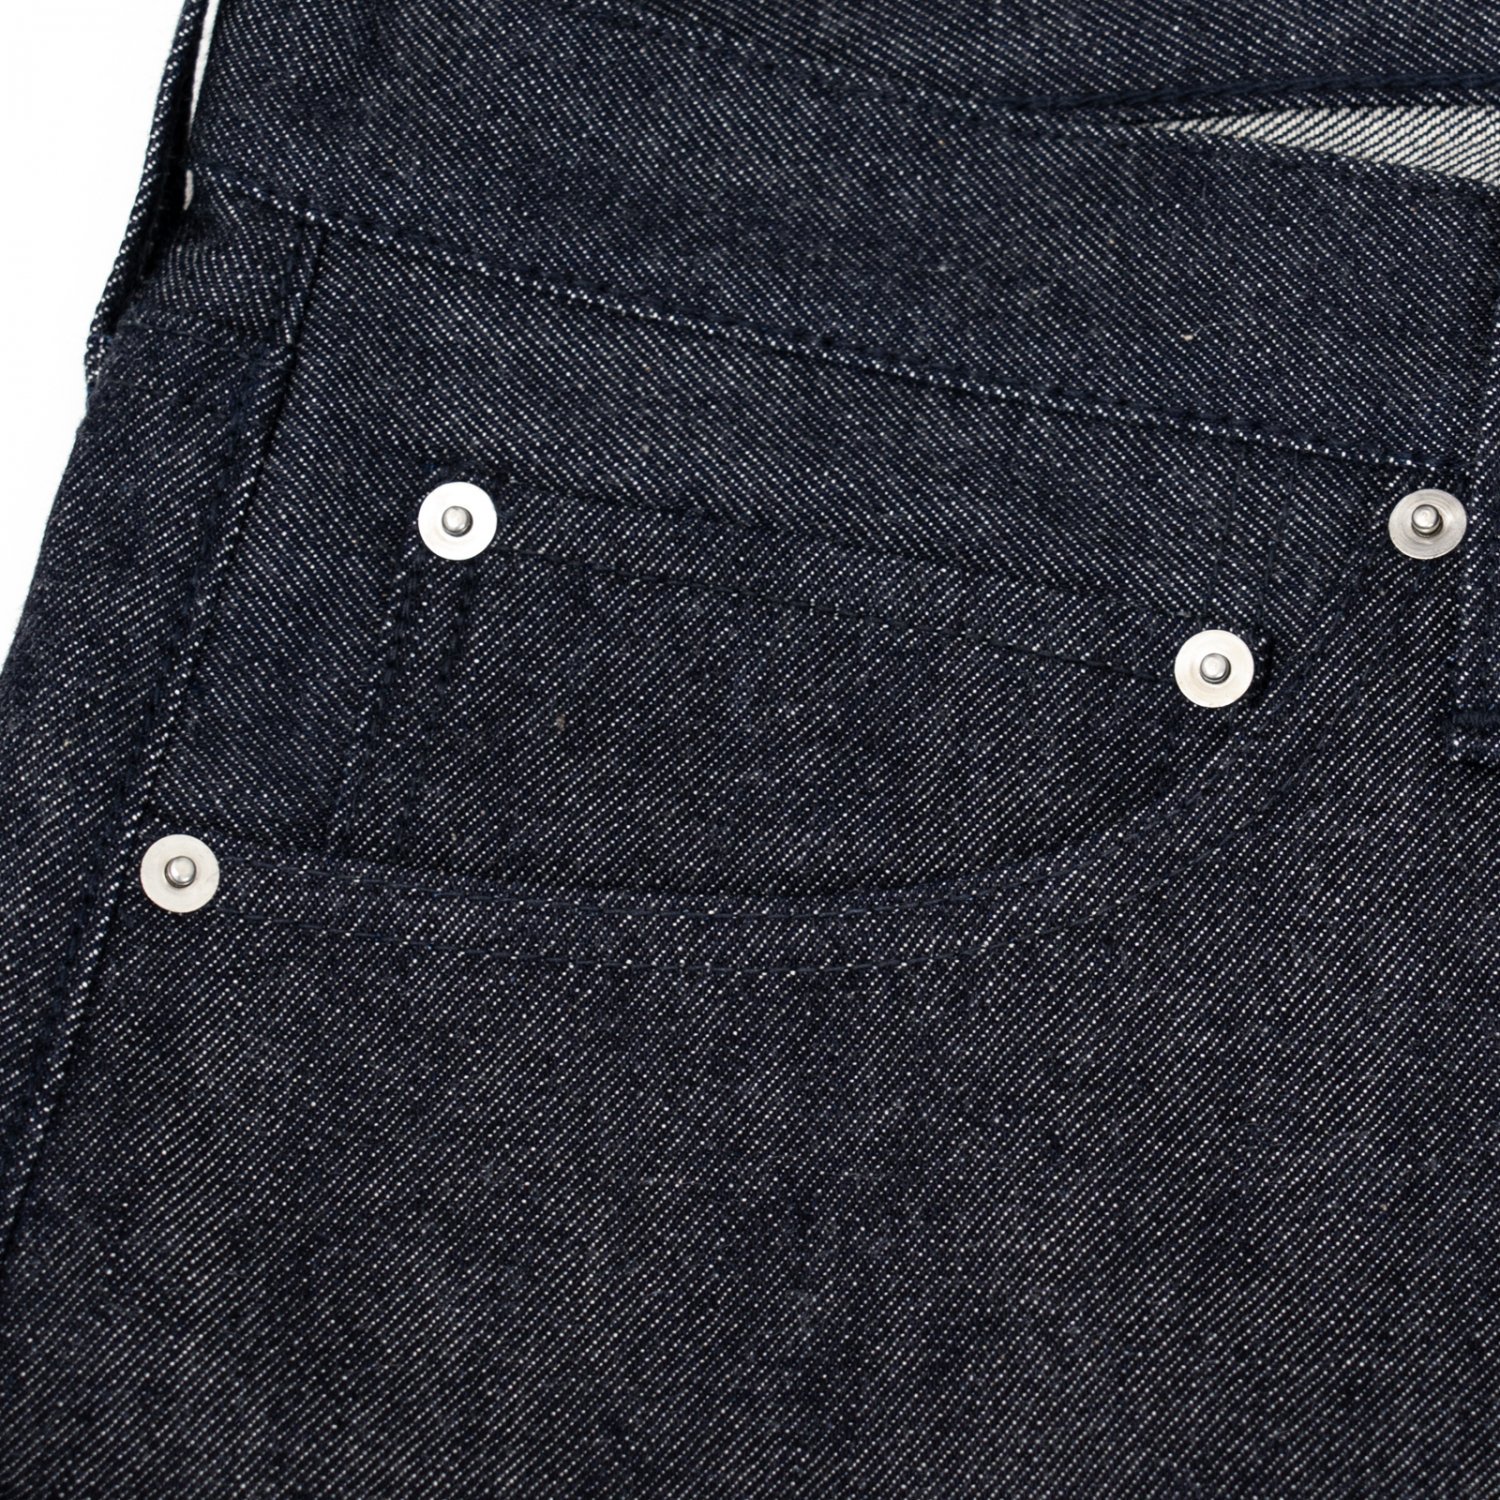 NORITAKE/HARADA * Denim Pants 35inch Short